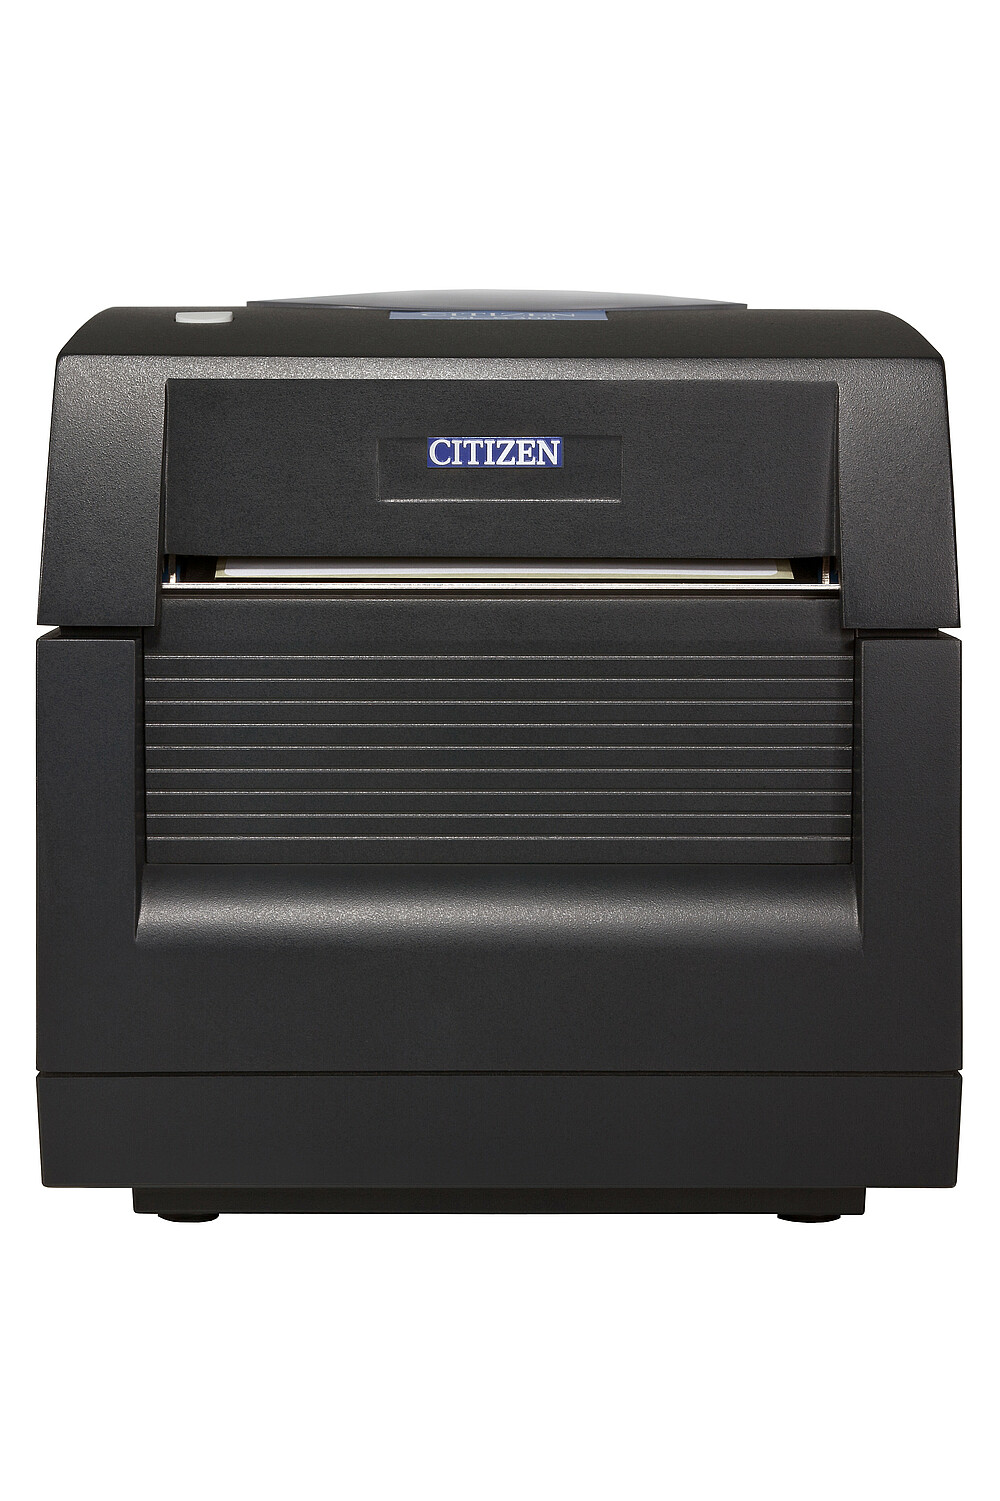 Citizen Imprimante Étiquette CL-S300 Face avant